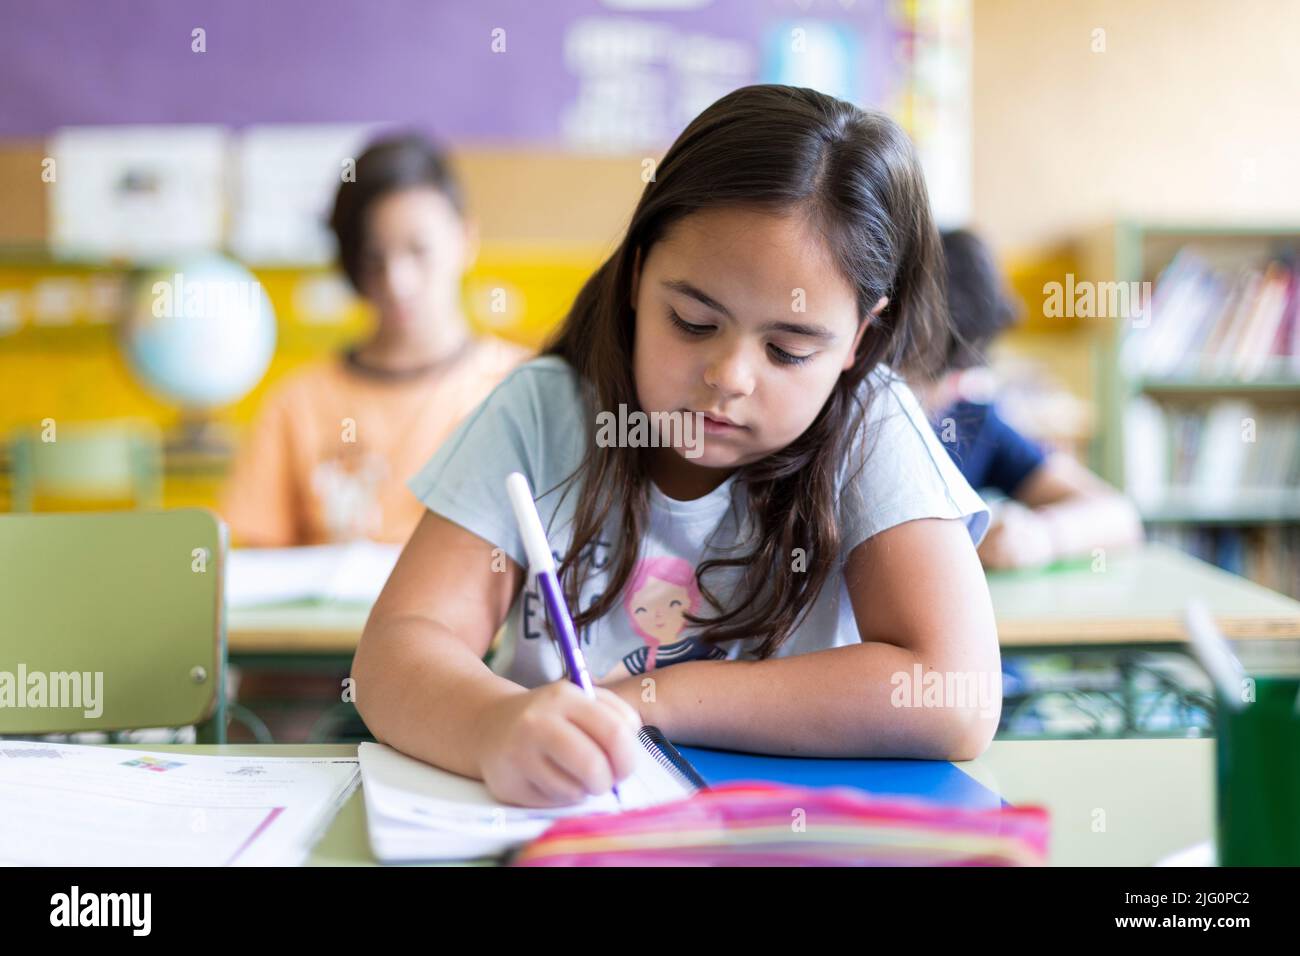 Petite fille de race blanche faisant ses devoirs à l'école. Concept d'apprentissage, d'éducation et de développement des enfants. Banque D'Images